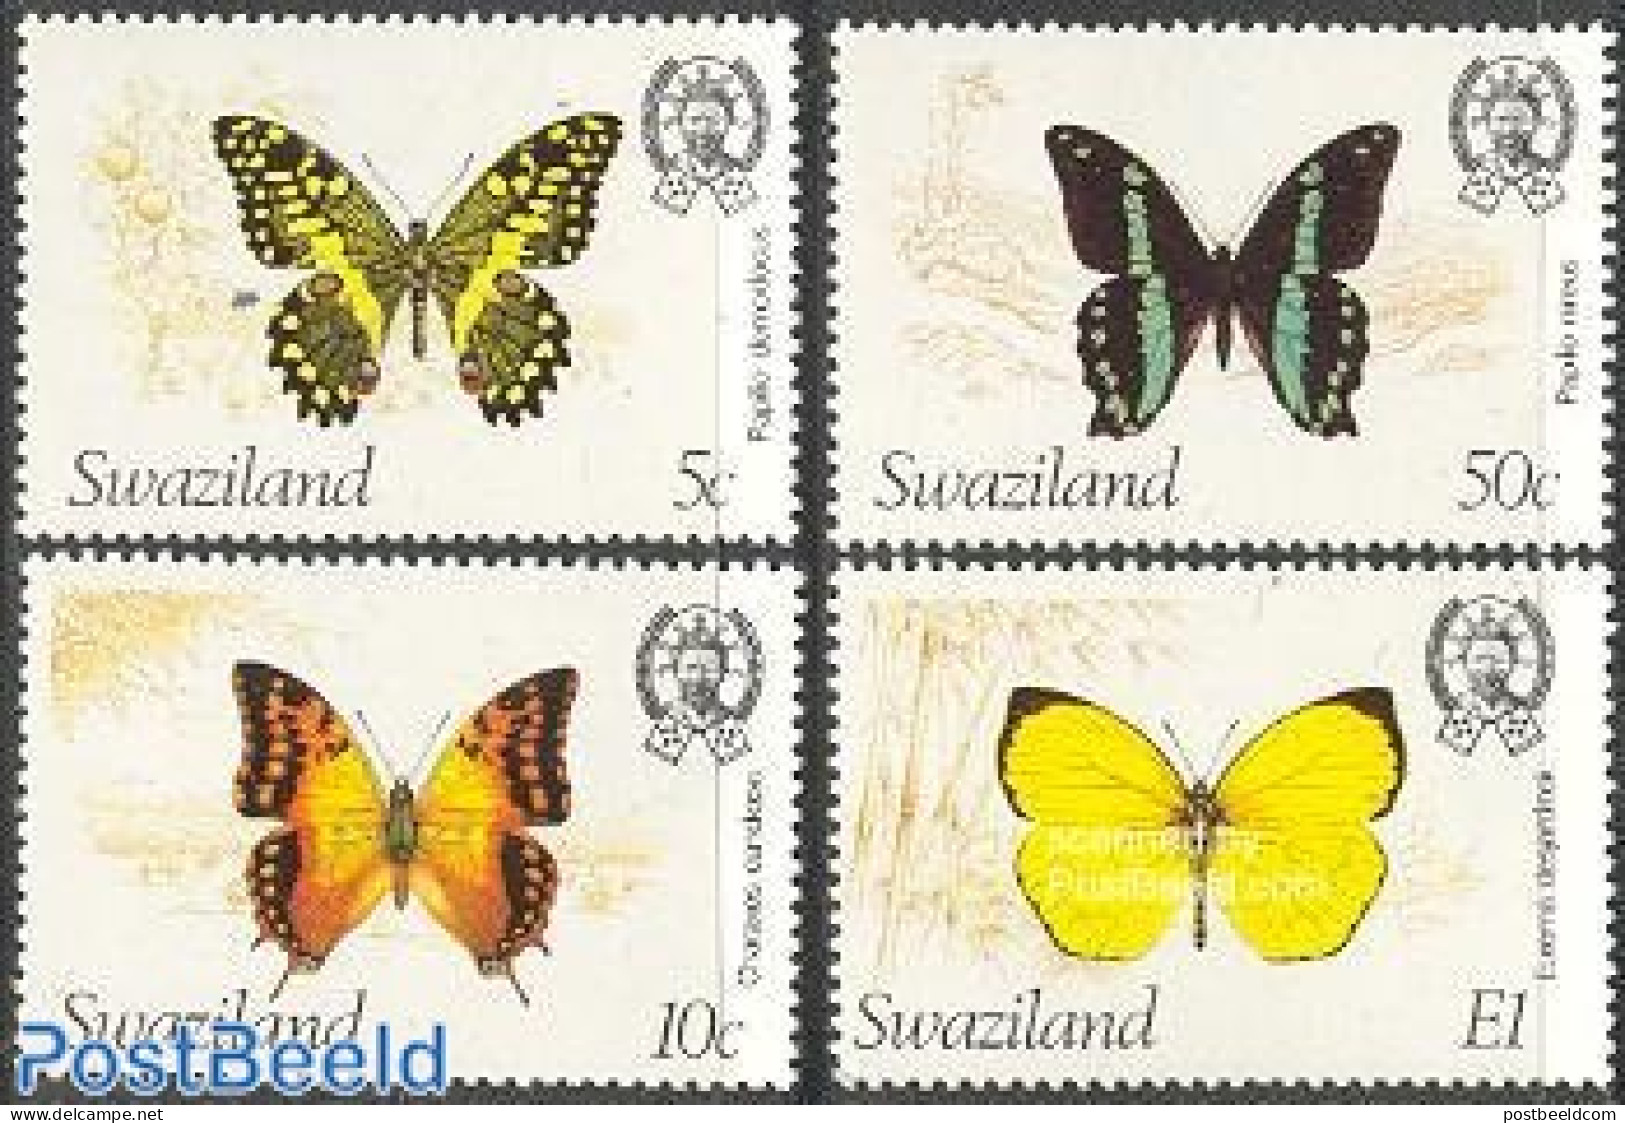 Eswatini/Swaziland 1982 Butterflies 4v, Mint NH, Nature - Butterflies - Swaziland (1968-...)